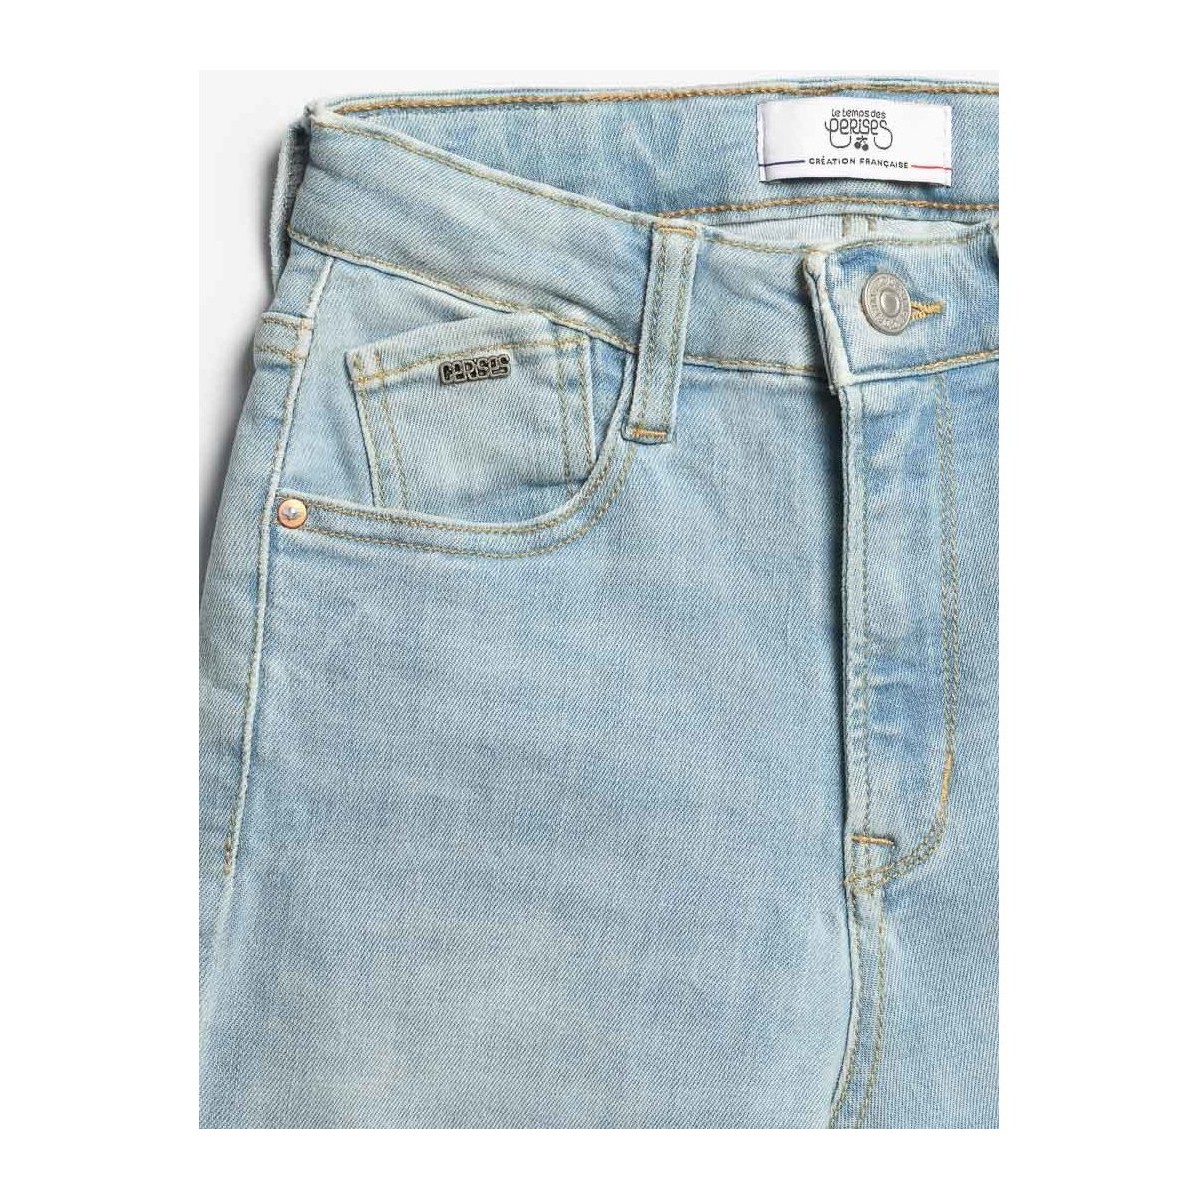 Le Temps des Cerises Bleu Basic 400/12 mom taille haute 7/8ème jeans bleu 8WskSoyD